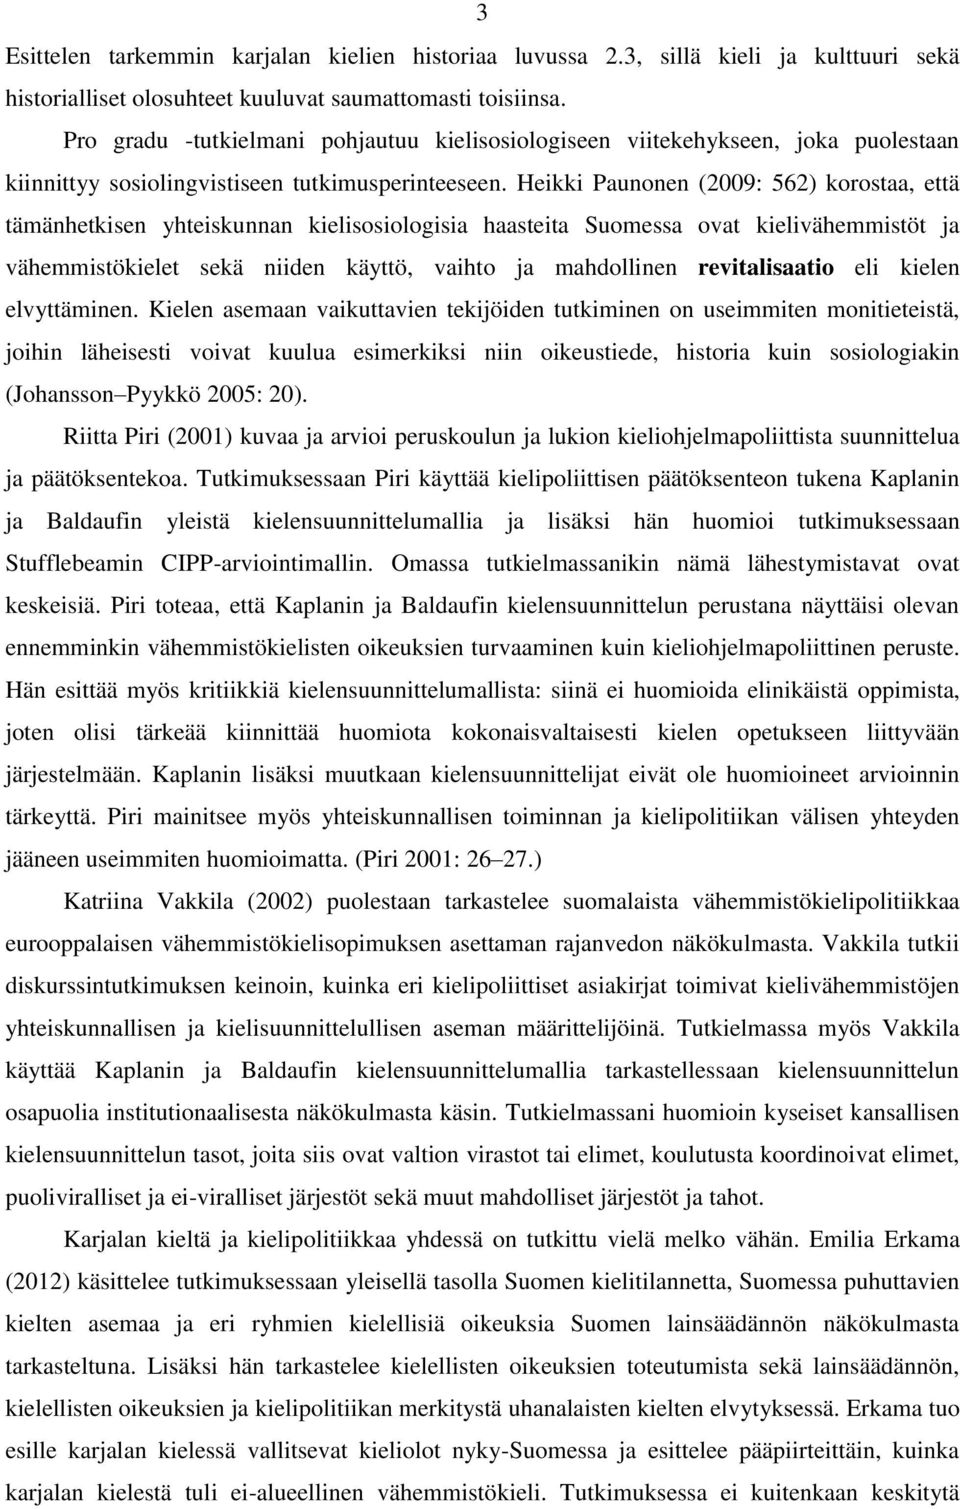 Heikki Paunonen (2009: 562) korostaa, että tämänhetkisen yhteiskunnan kielisosiologisia haasteita Suomessa ovat kielivähemmistöt ja vähemmistökielet sekä niiden käyttö, vaihto ja mahdollinen